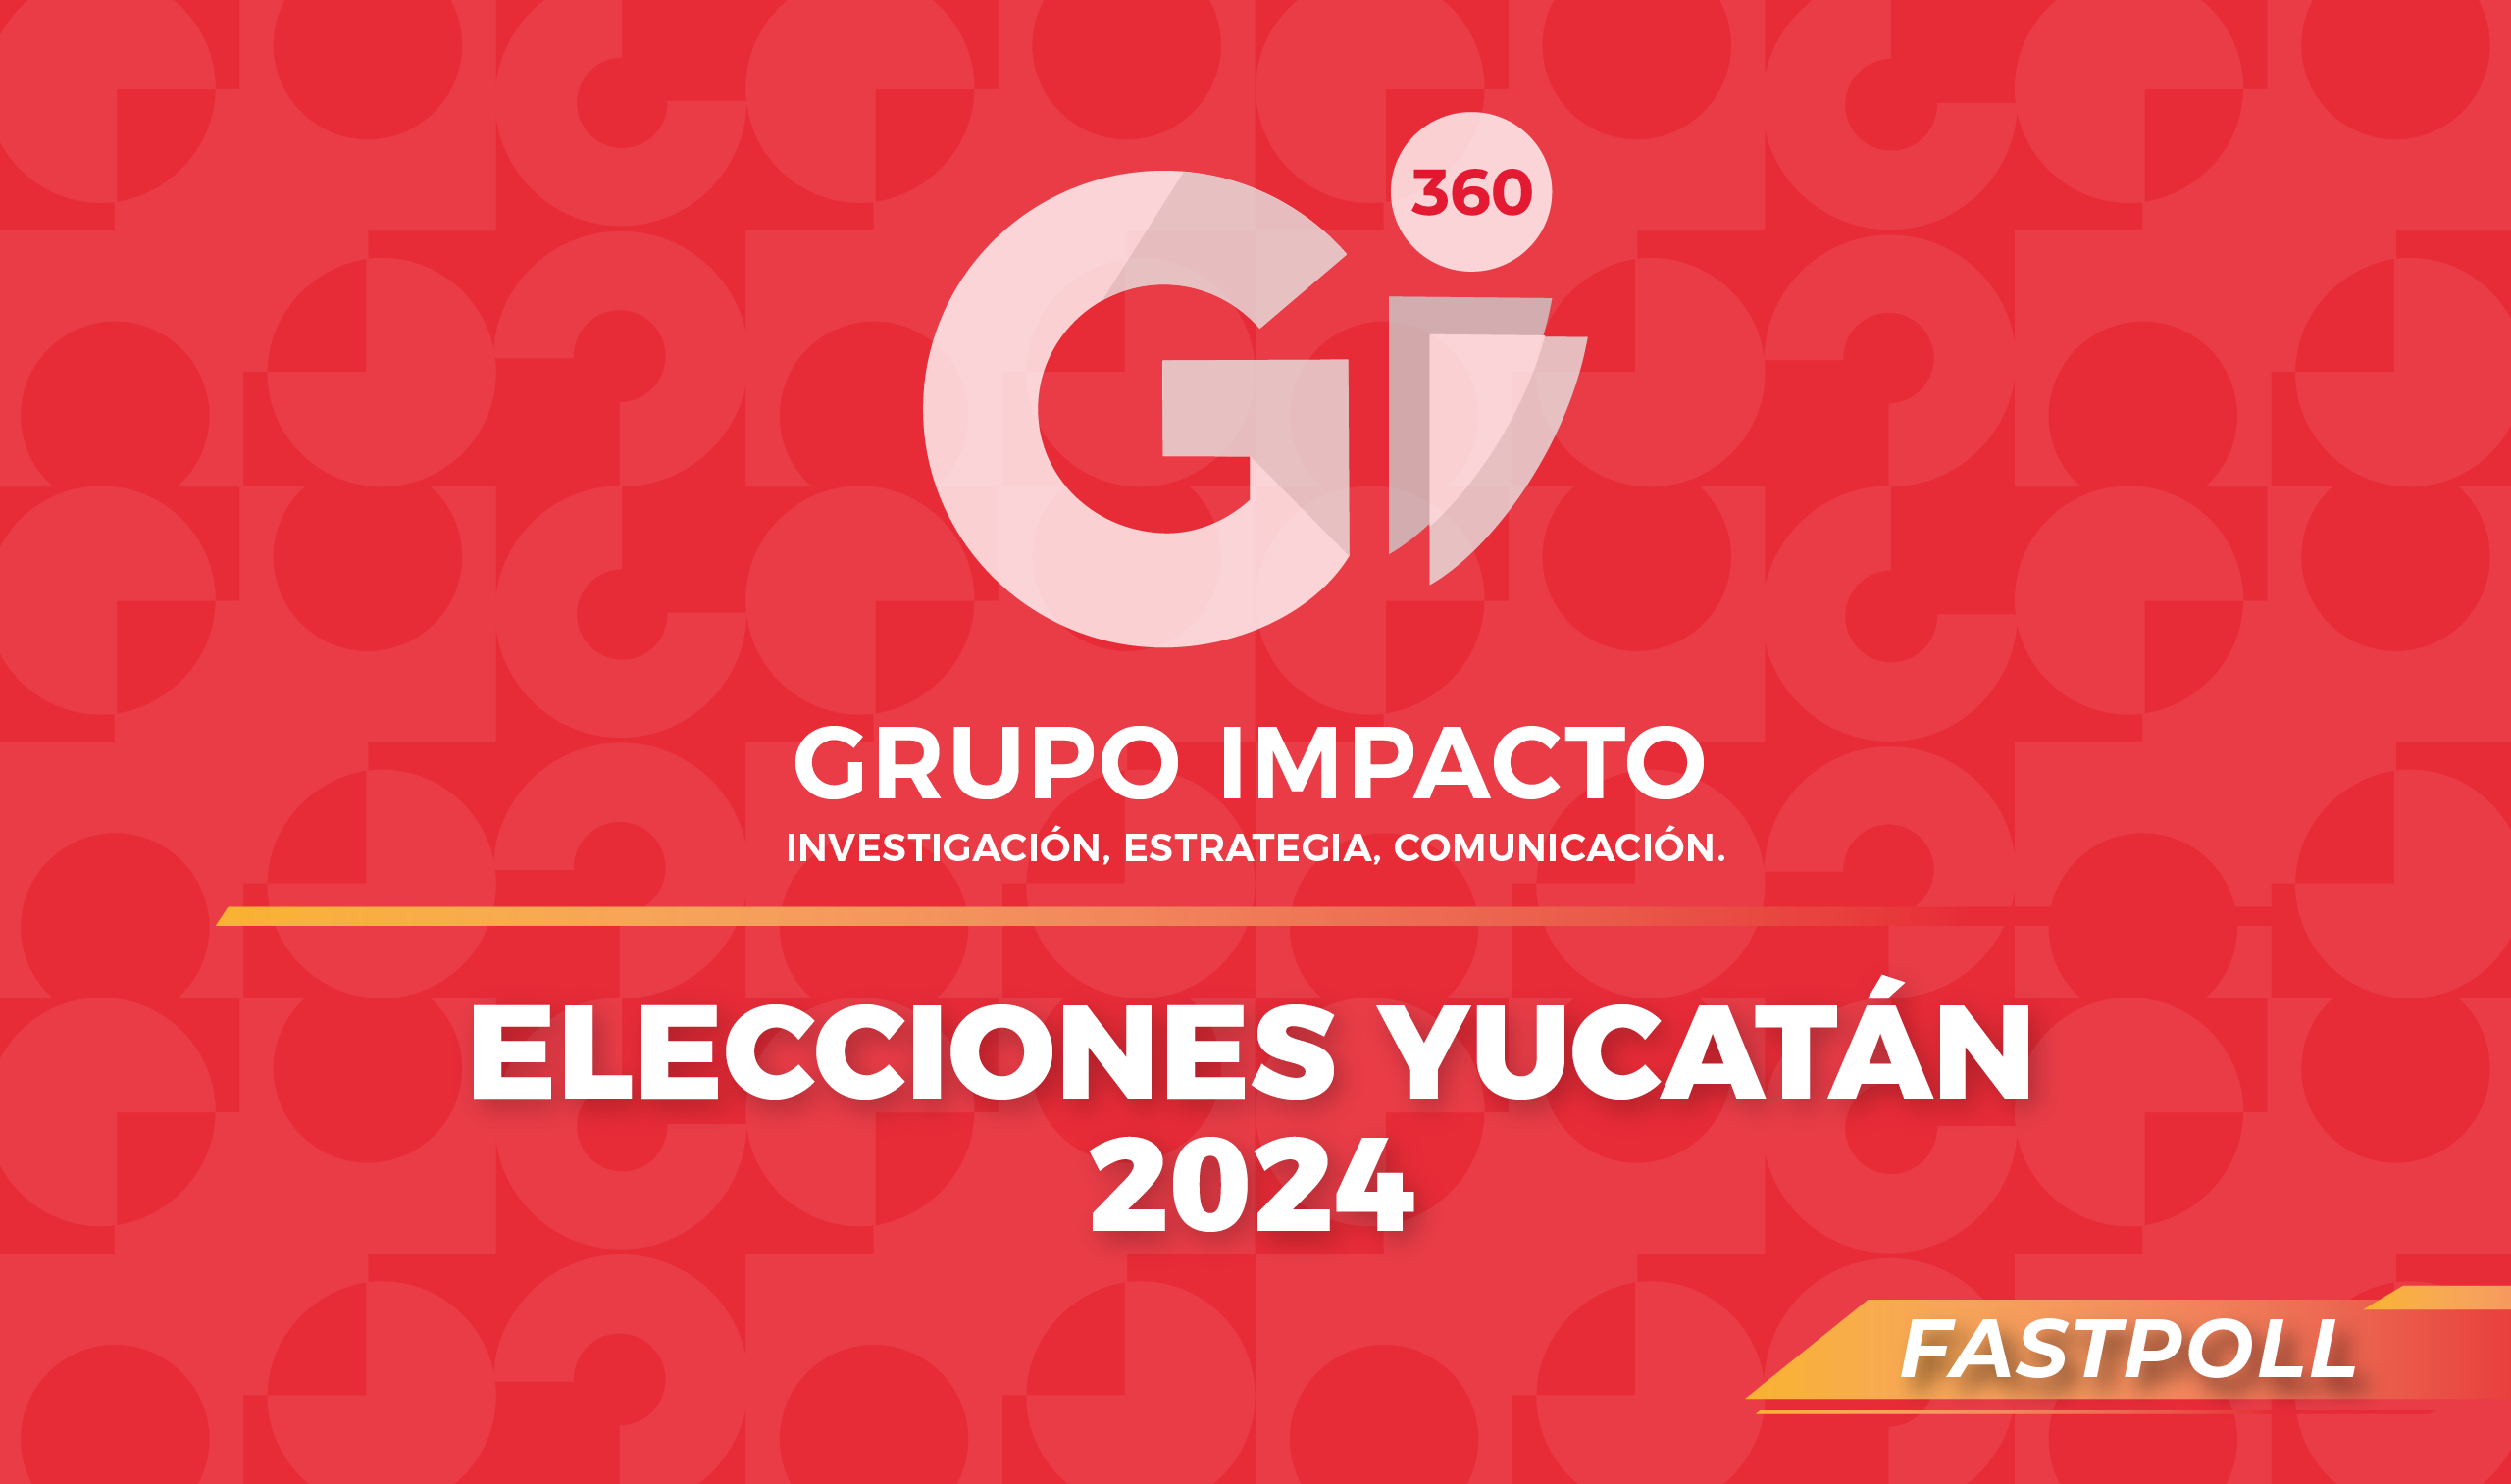 ELECCIONES YUCATÁN 2024 Gii360